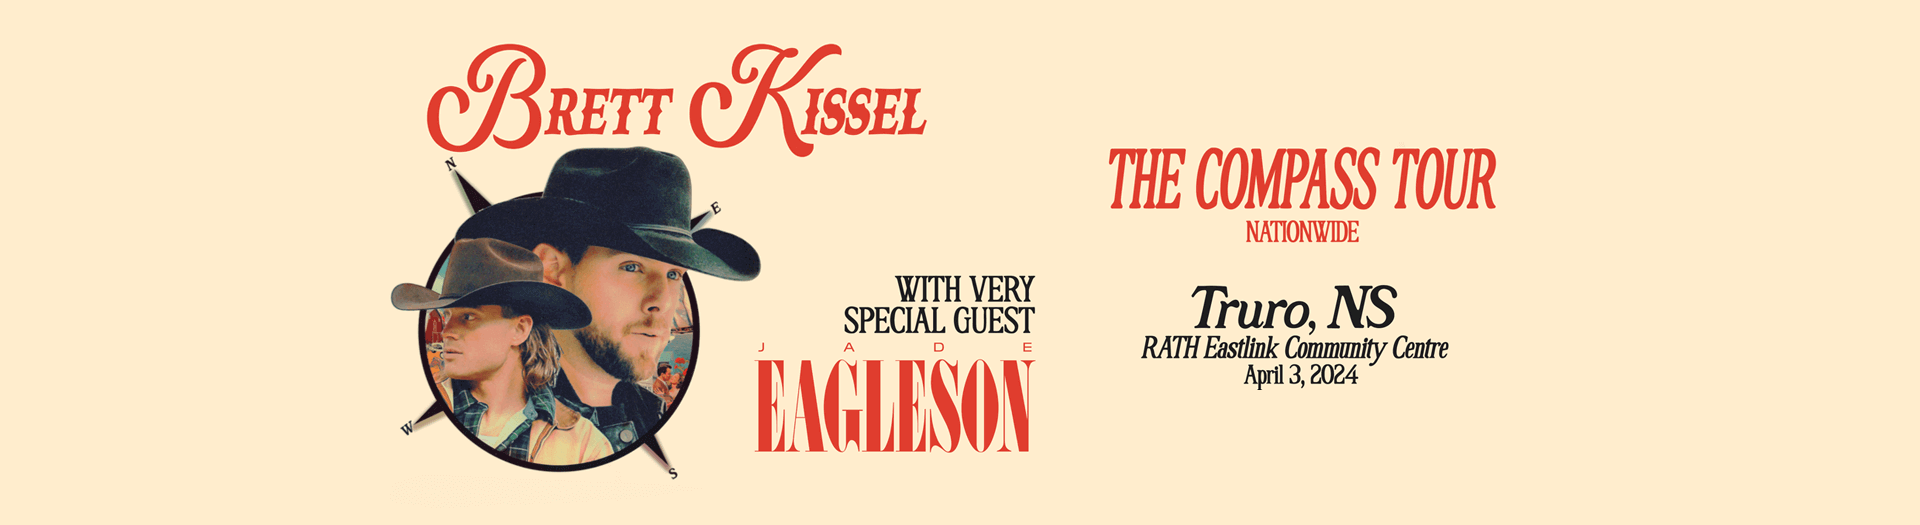 Brett Kissel: The Compass Tour, RECC Arena, Truro, NS